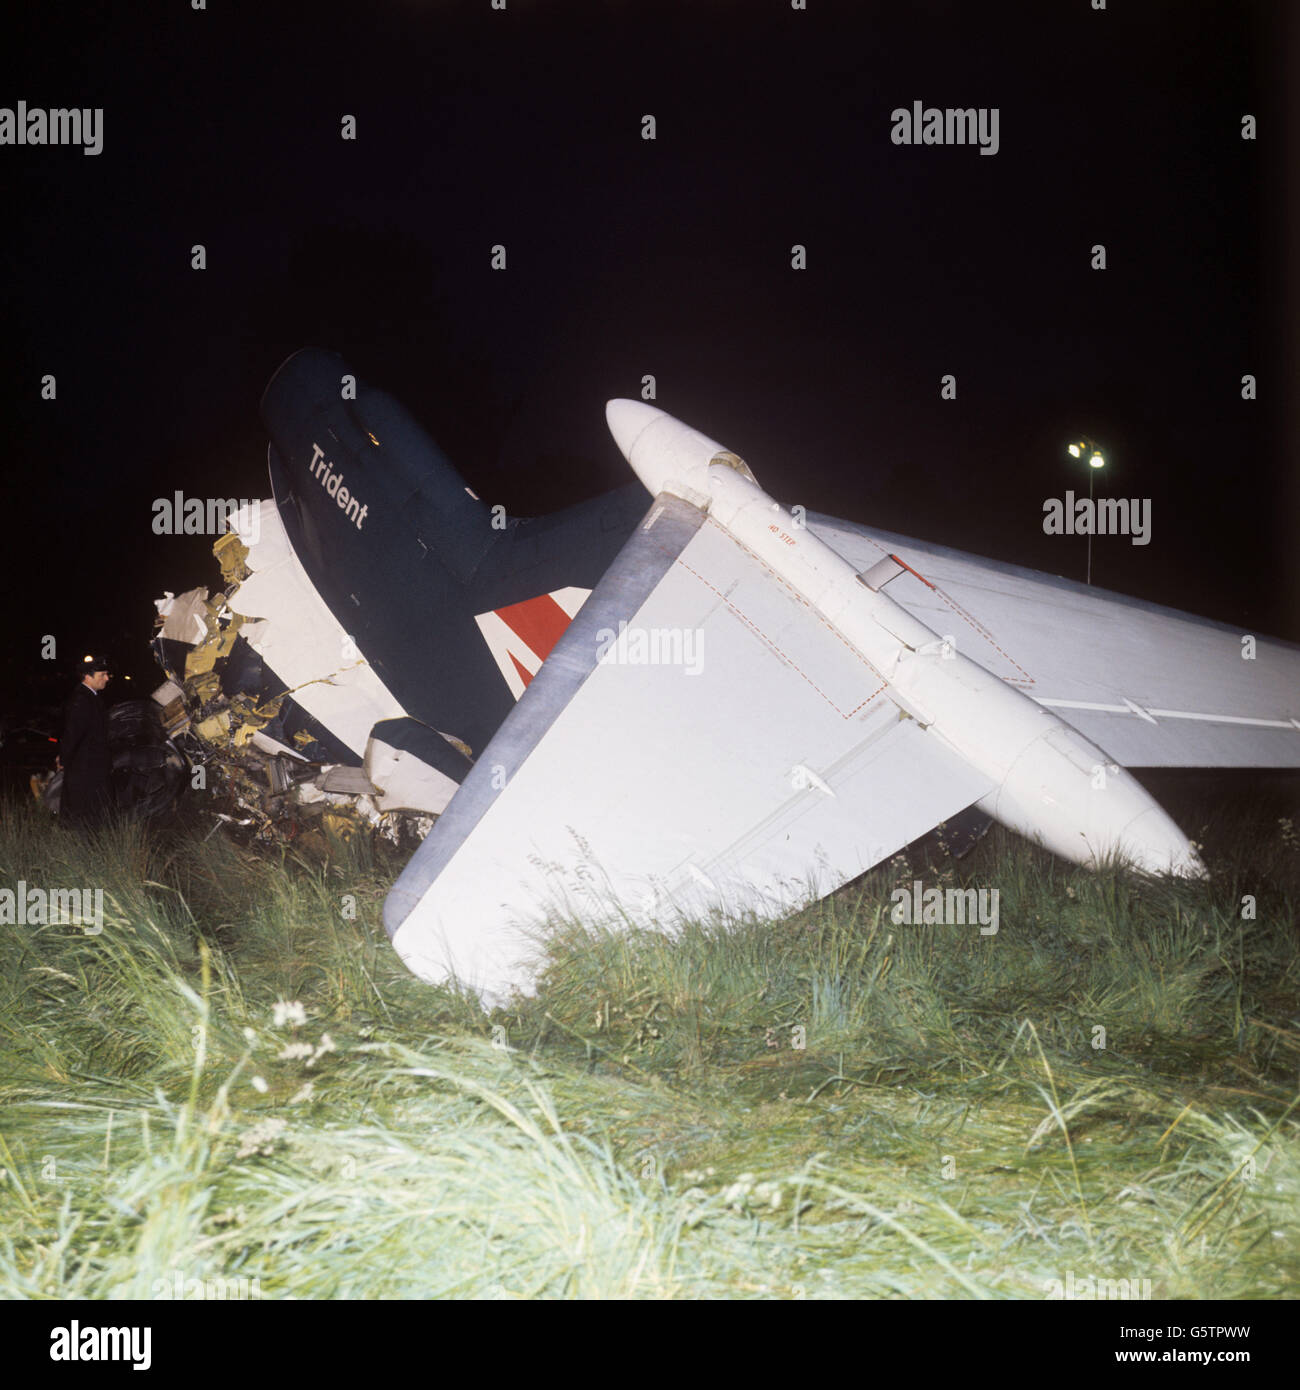 Der Heckabschnitt des in Brüssel gebundenen BEA Trident-Flugzeugs, das beim Aufprall aus dem Rumpf gerissen wurde. Das Flugzeug stürzte Minuten nach dem Start vom Flughafen Heathrow ab und tötete alle 118 Menschen an Bord. Stockfoto